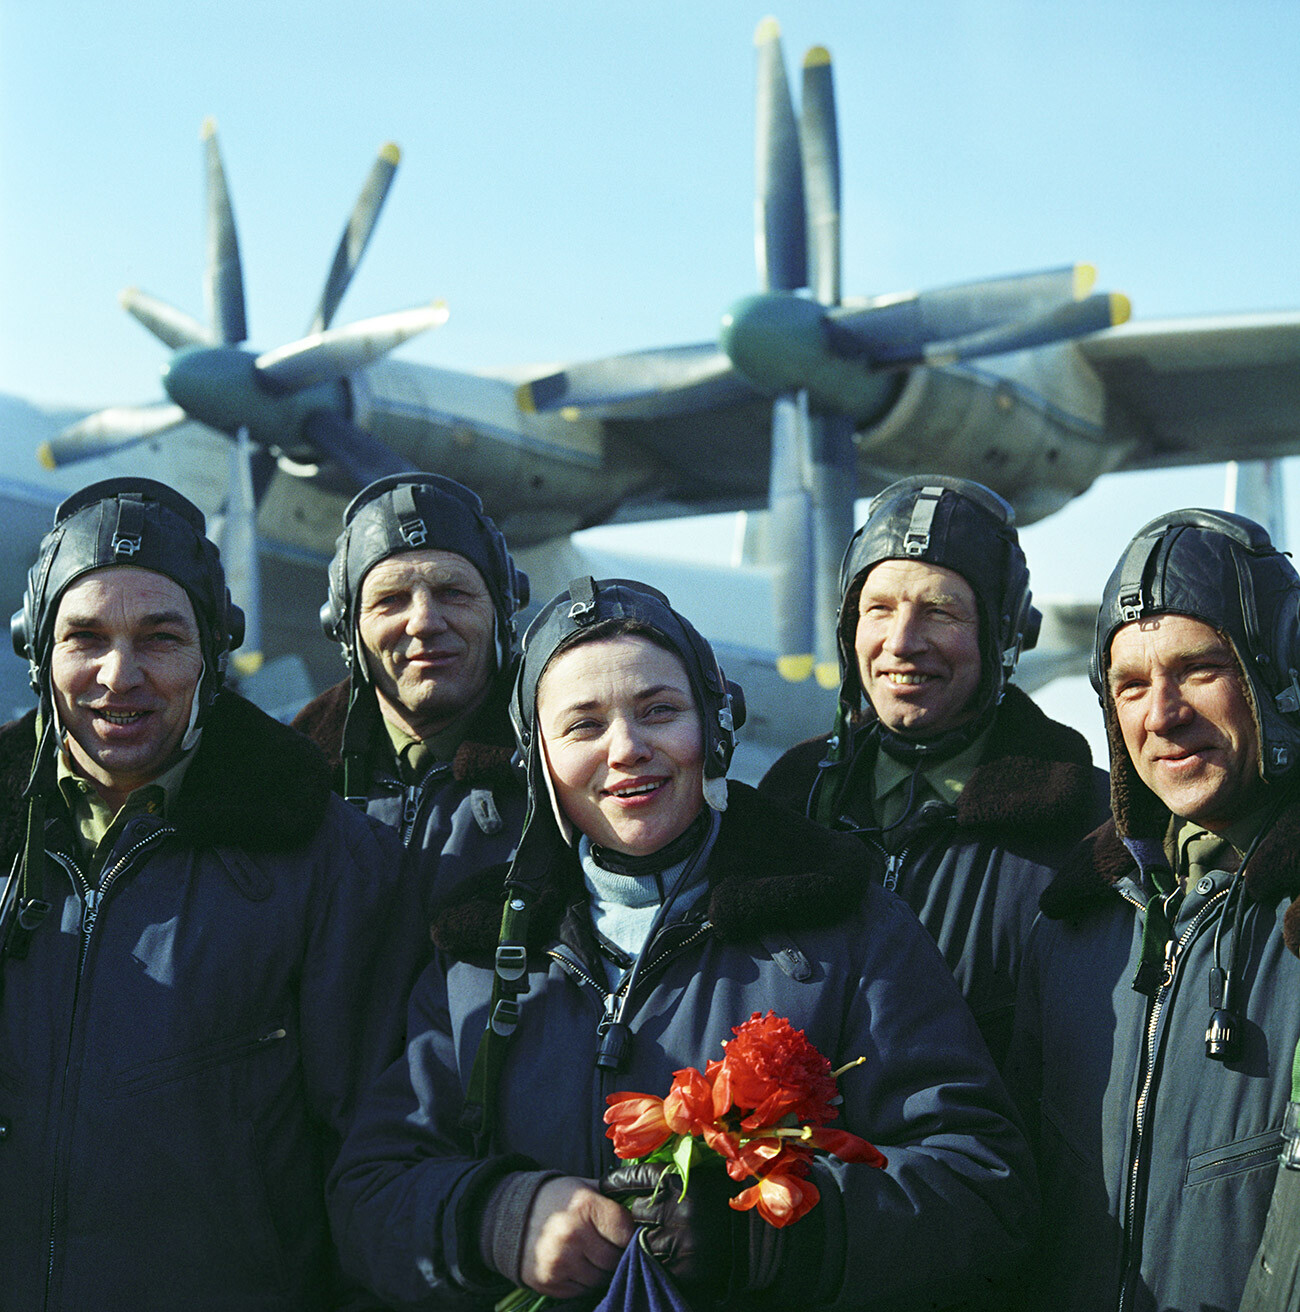 Testna pilotka, častna mojstrica športa ZSSR, večkratna svetovna rekorderka Marina Popovič in njena posadka po testnem poletu s težkim turbopropelerskim transportnim letalom AN-22. Natančen datum in lokacija fotografije nista znana.